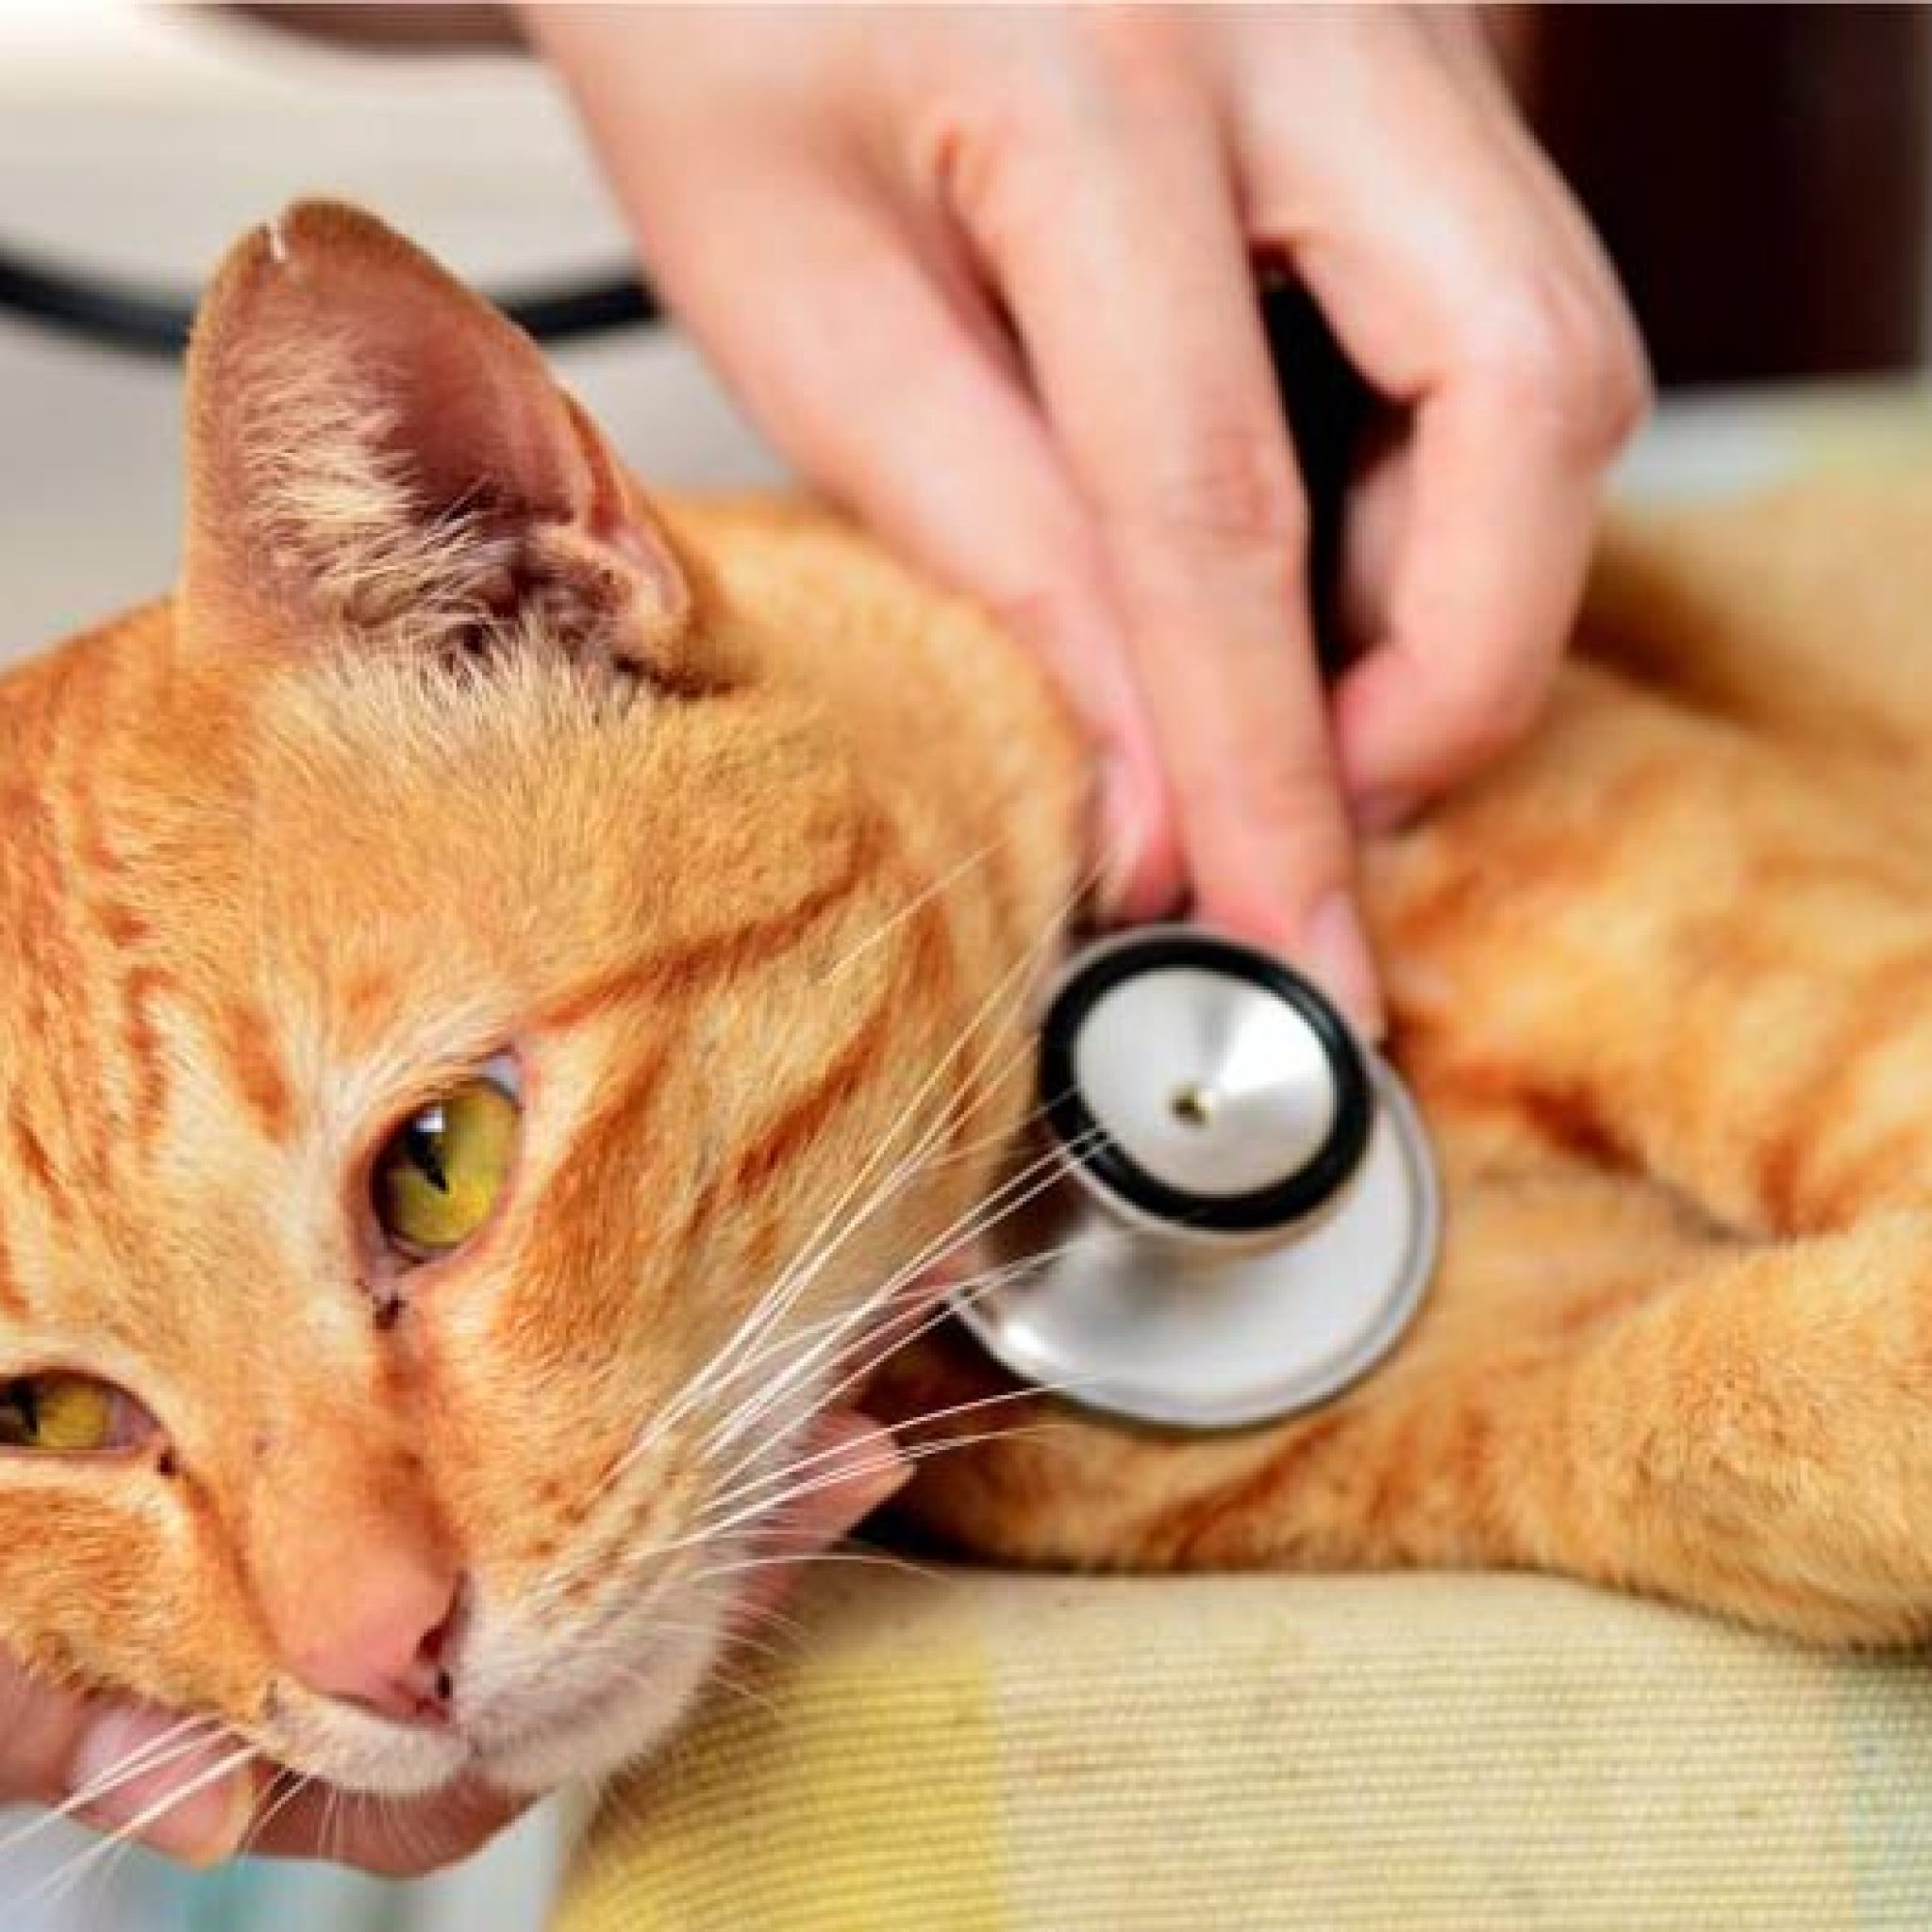 veteriner hekim kontrolünde sarı kedi